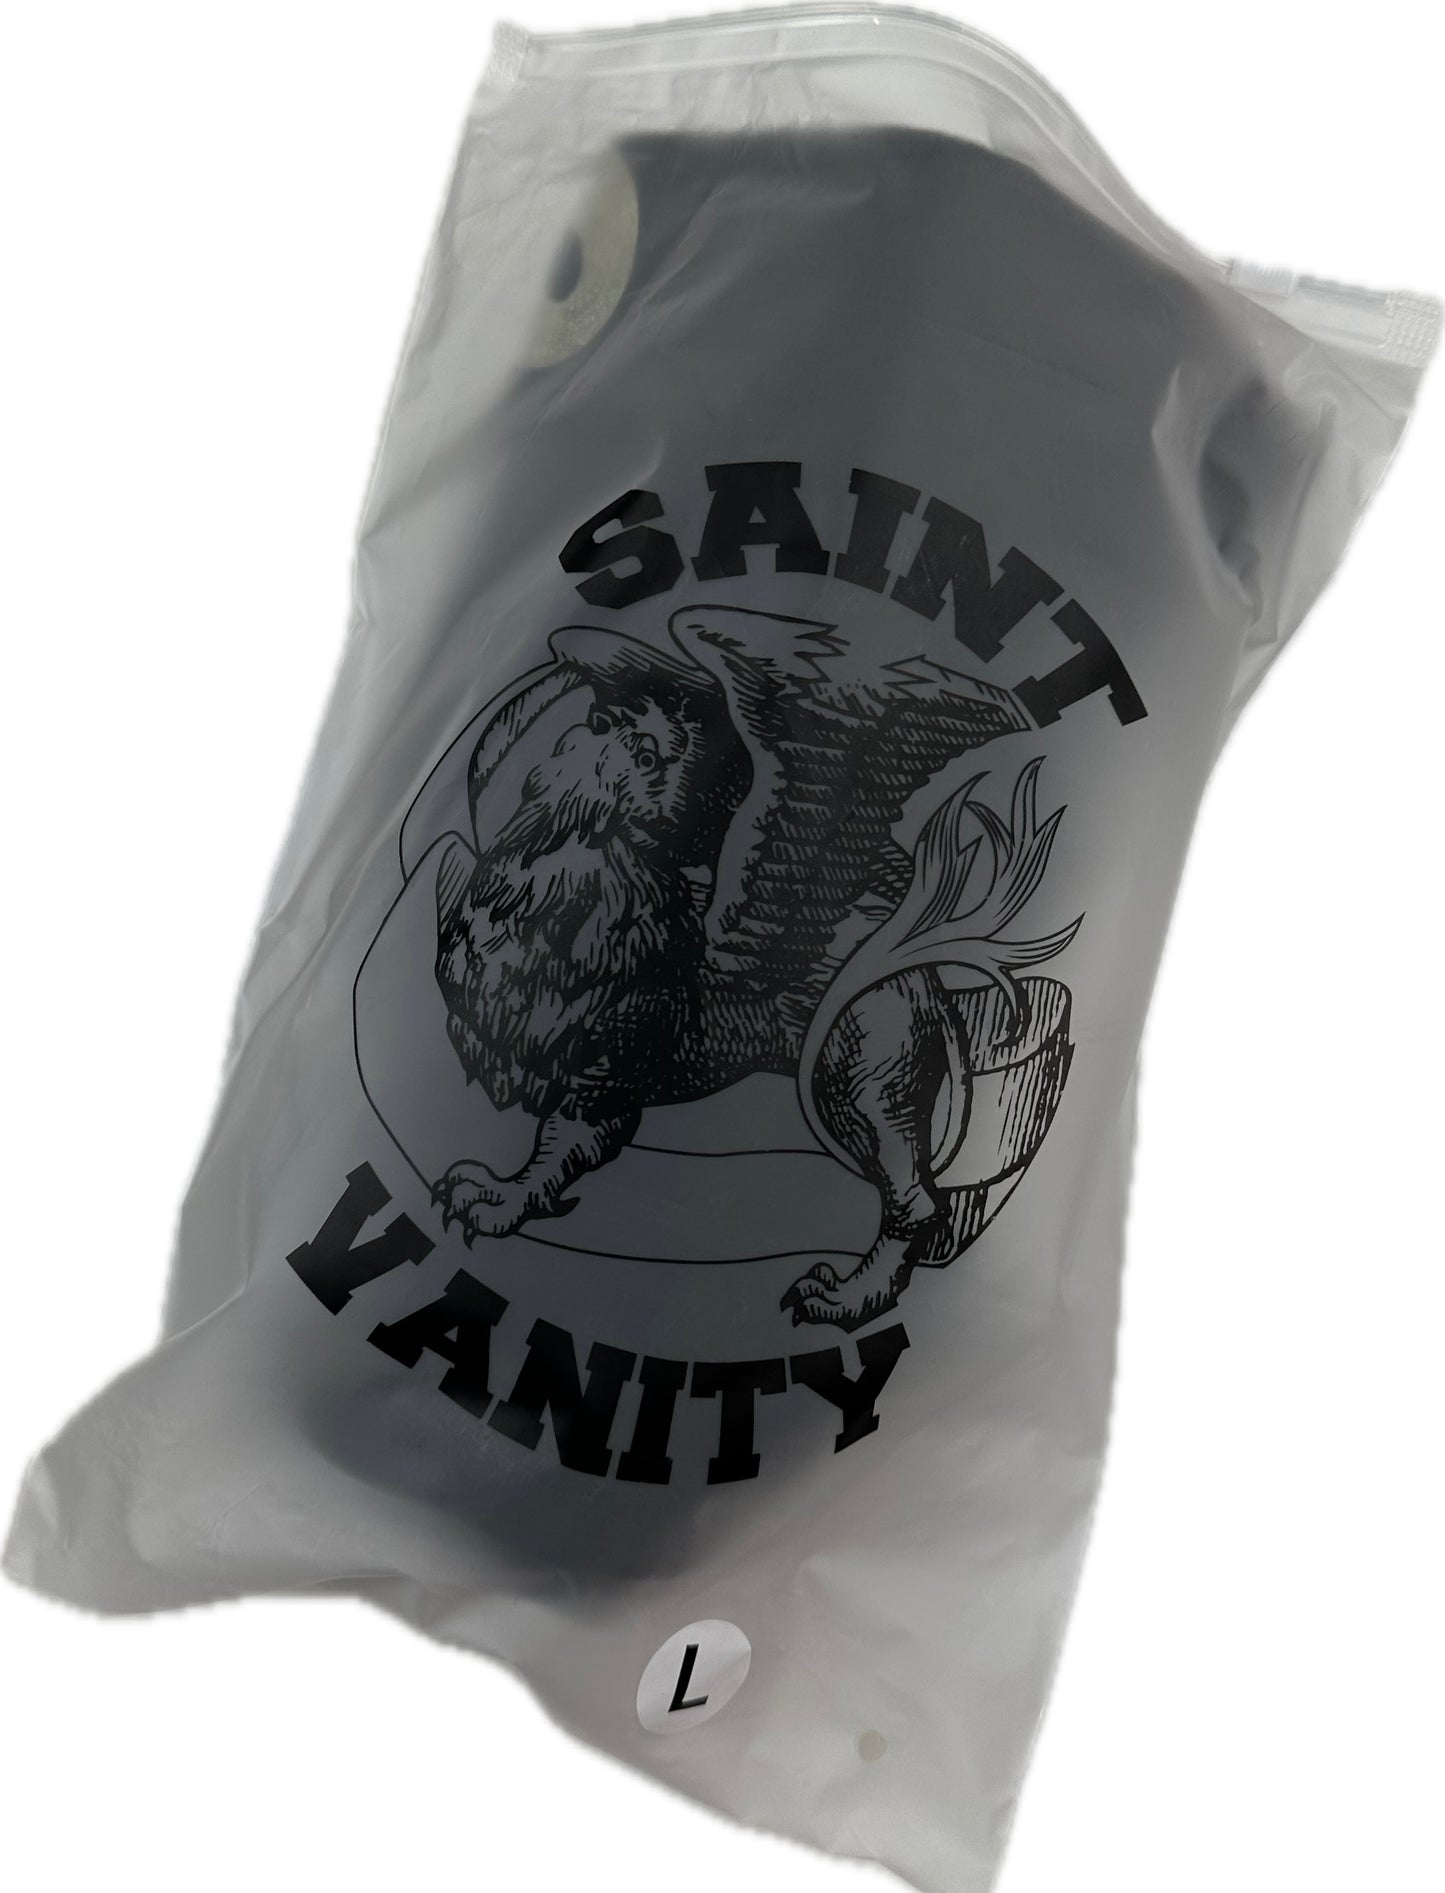 Saint Vanity T-shirt